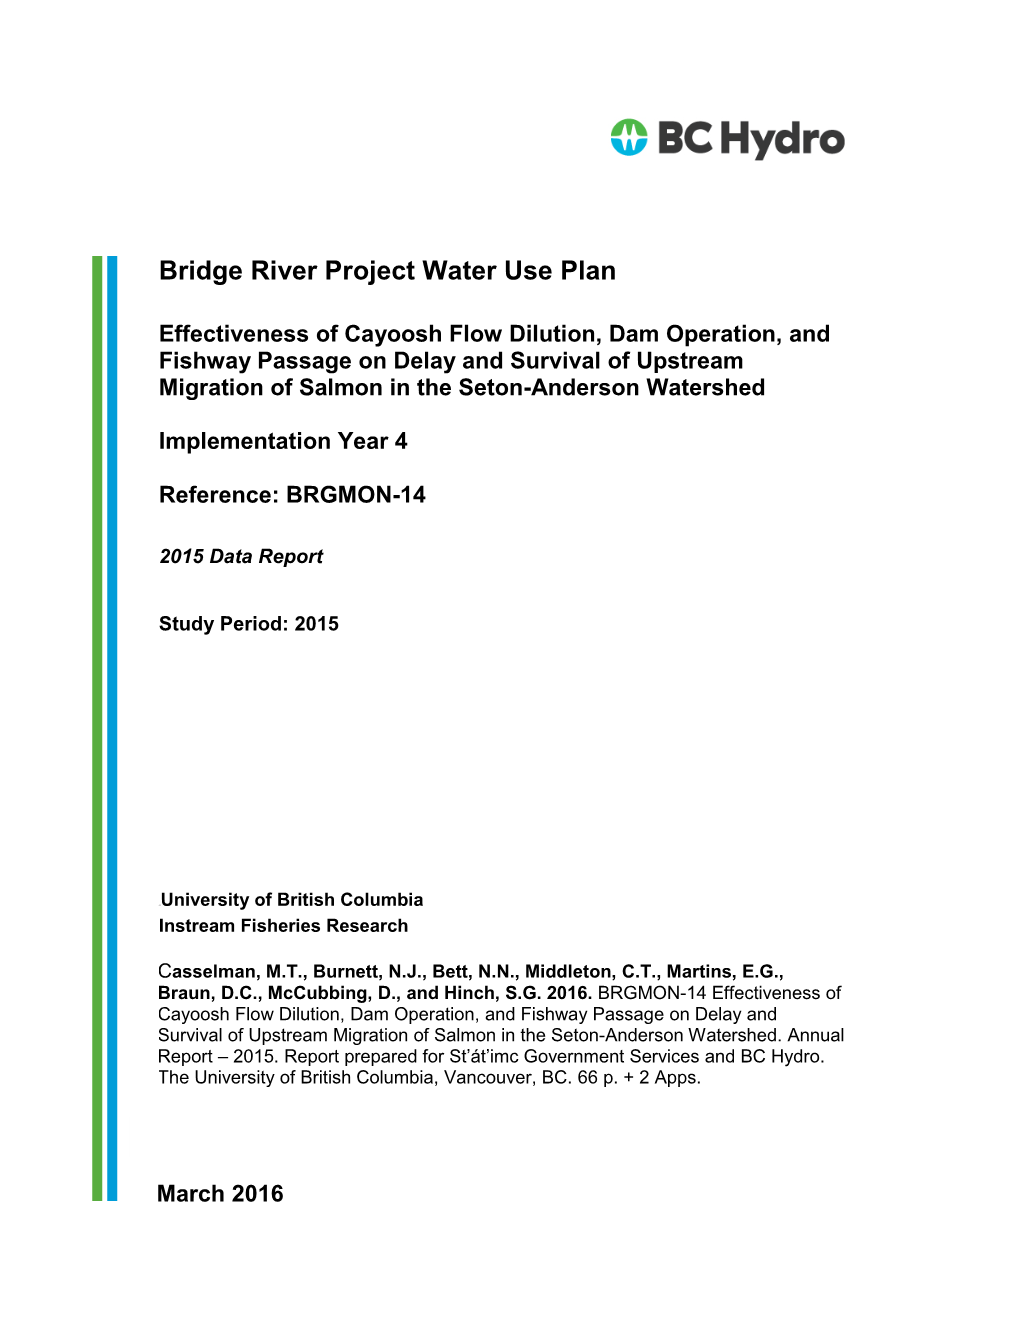 BRGMON-14 | Effectiveness of Cayoosh Flow Dilution, Dam